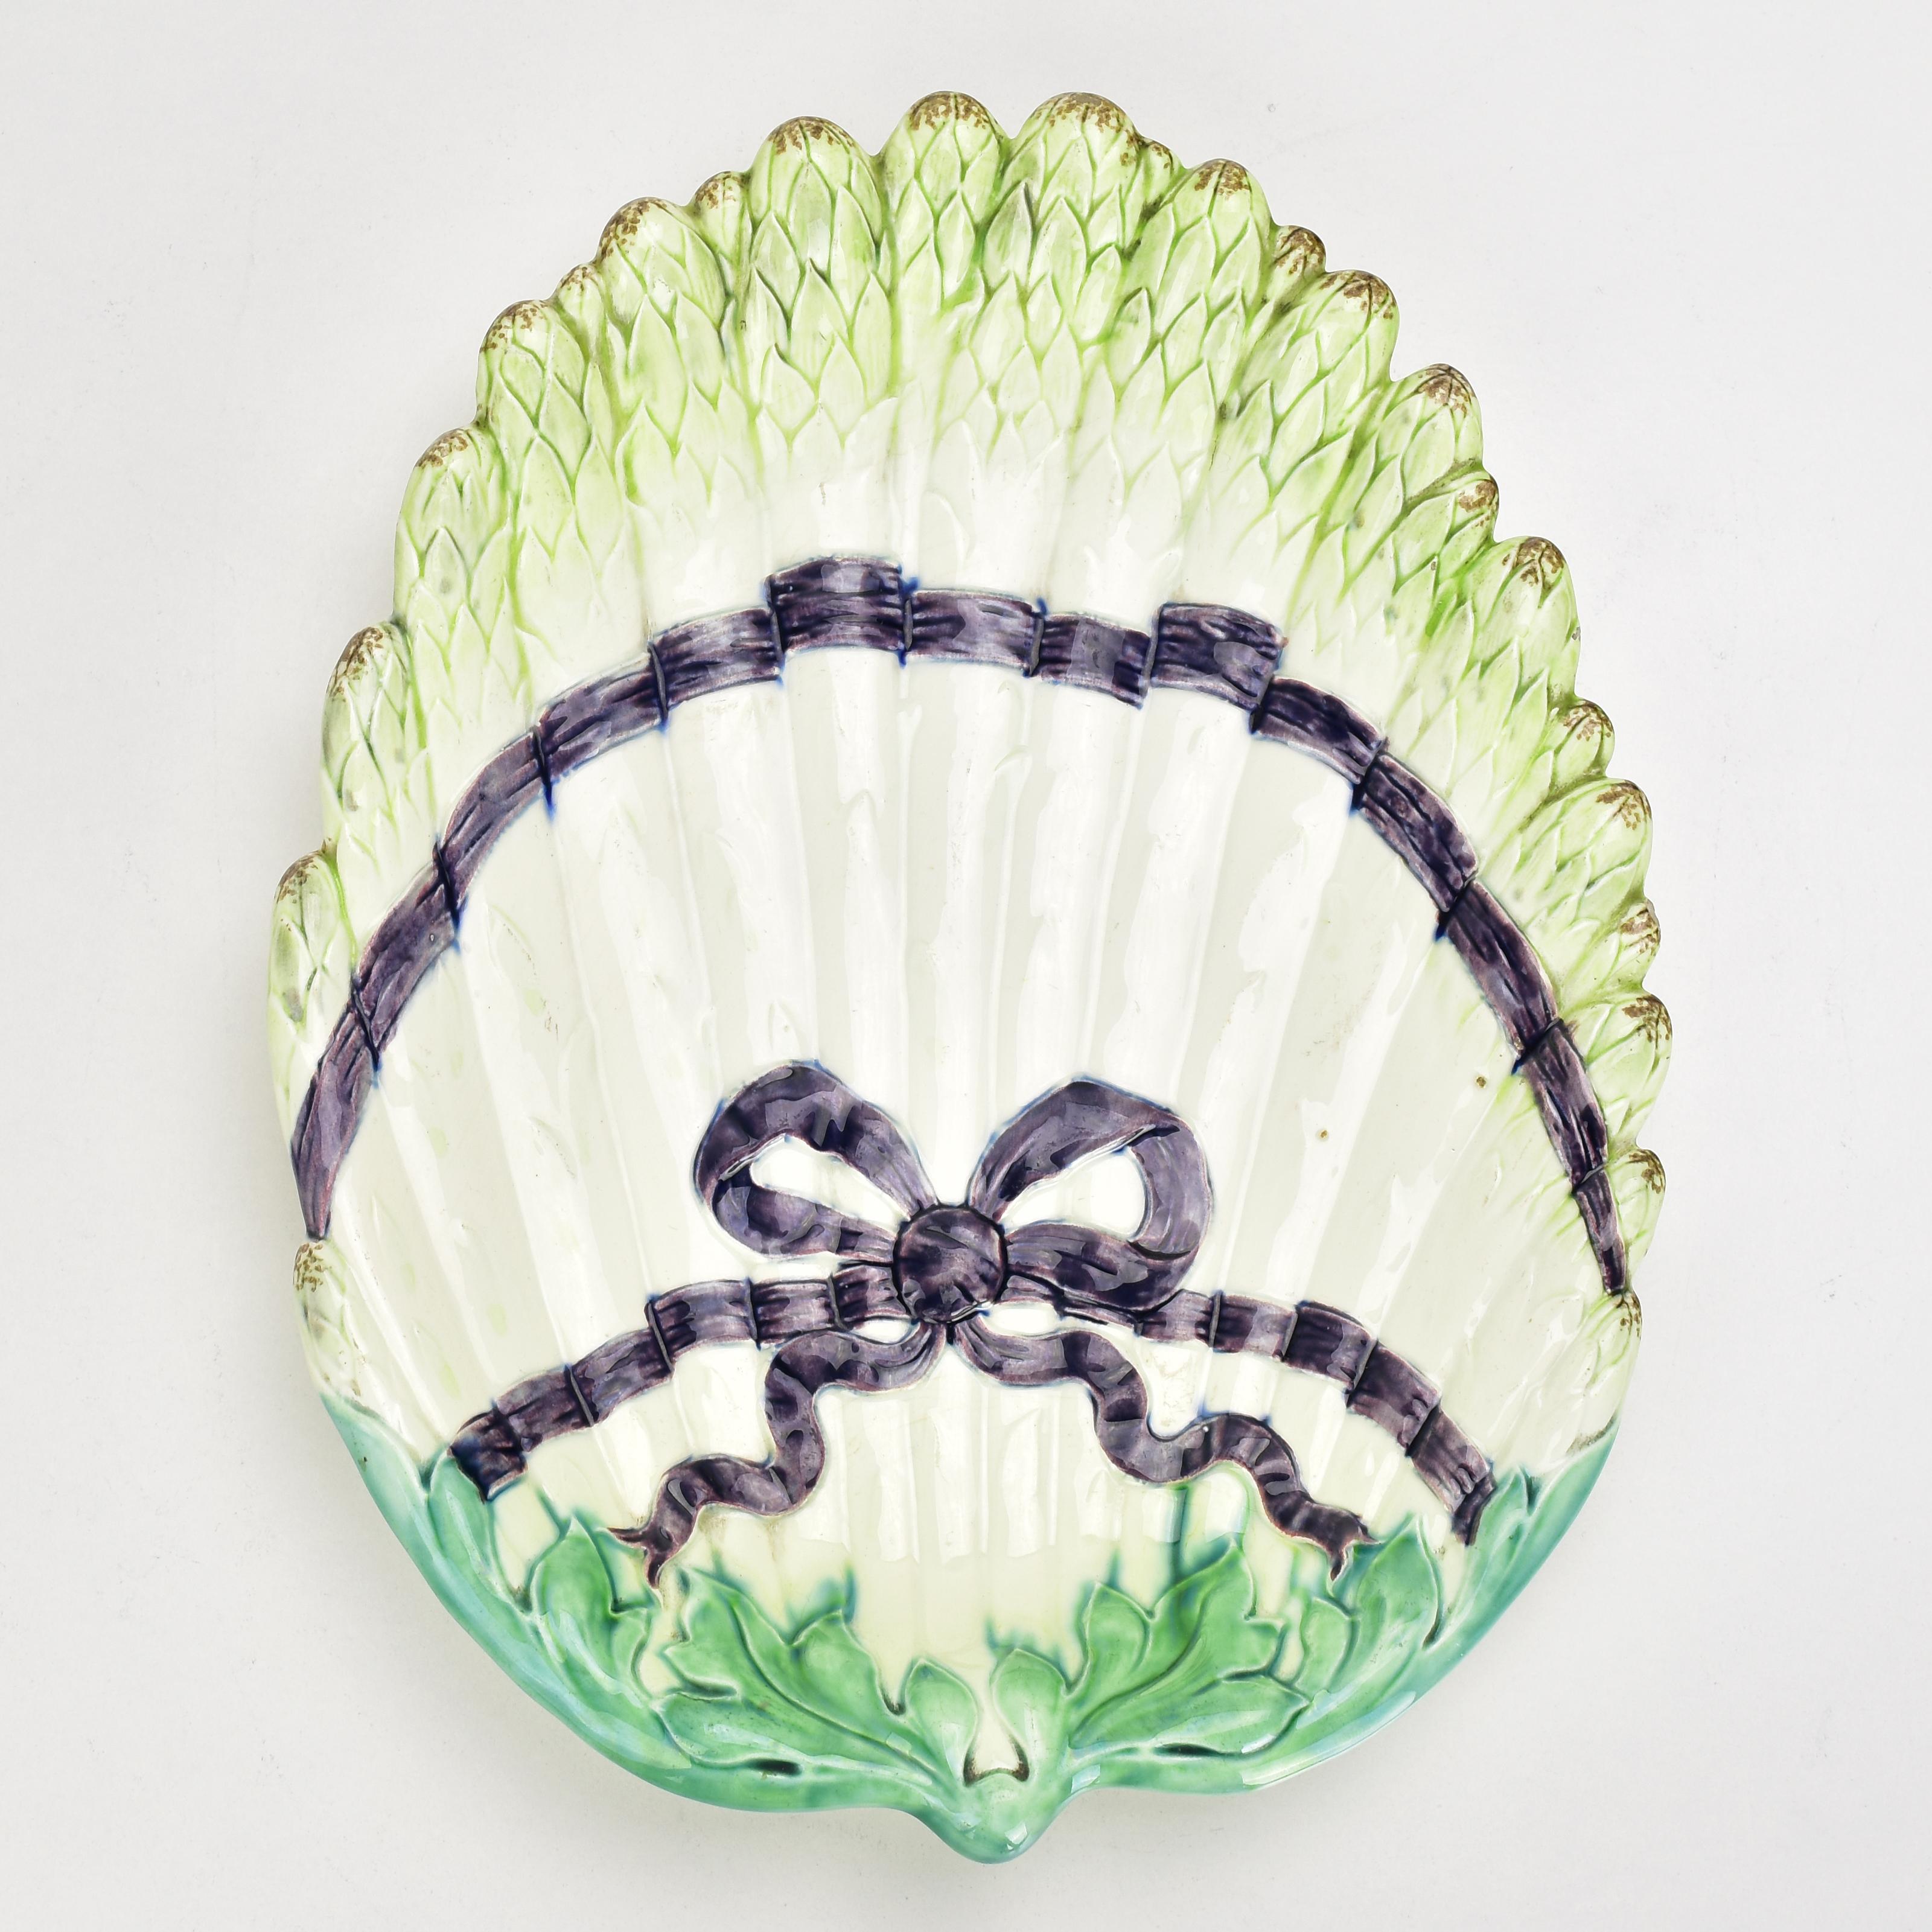 Antique Art Nouveau barbotine aspargus serving plate.